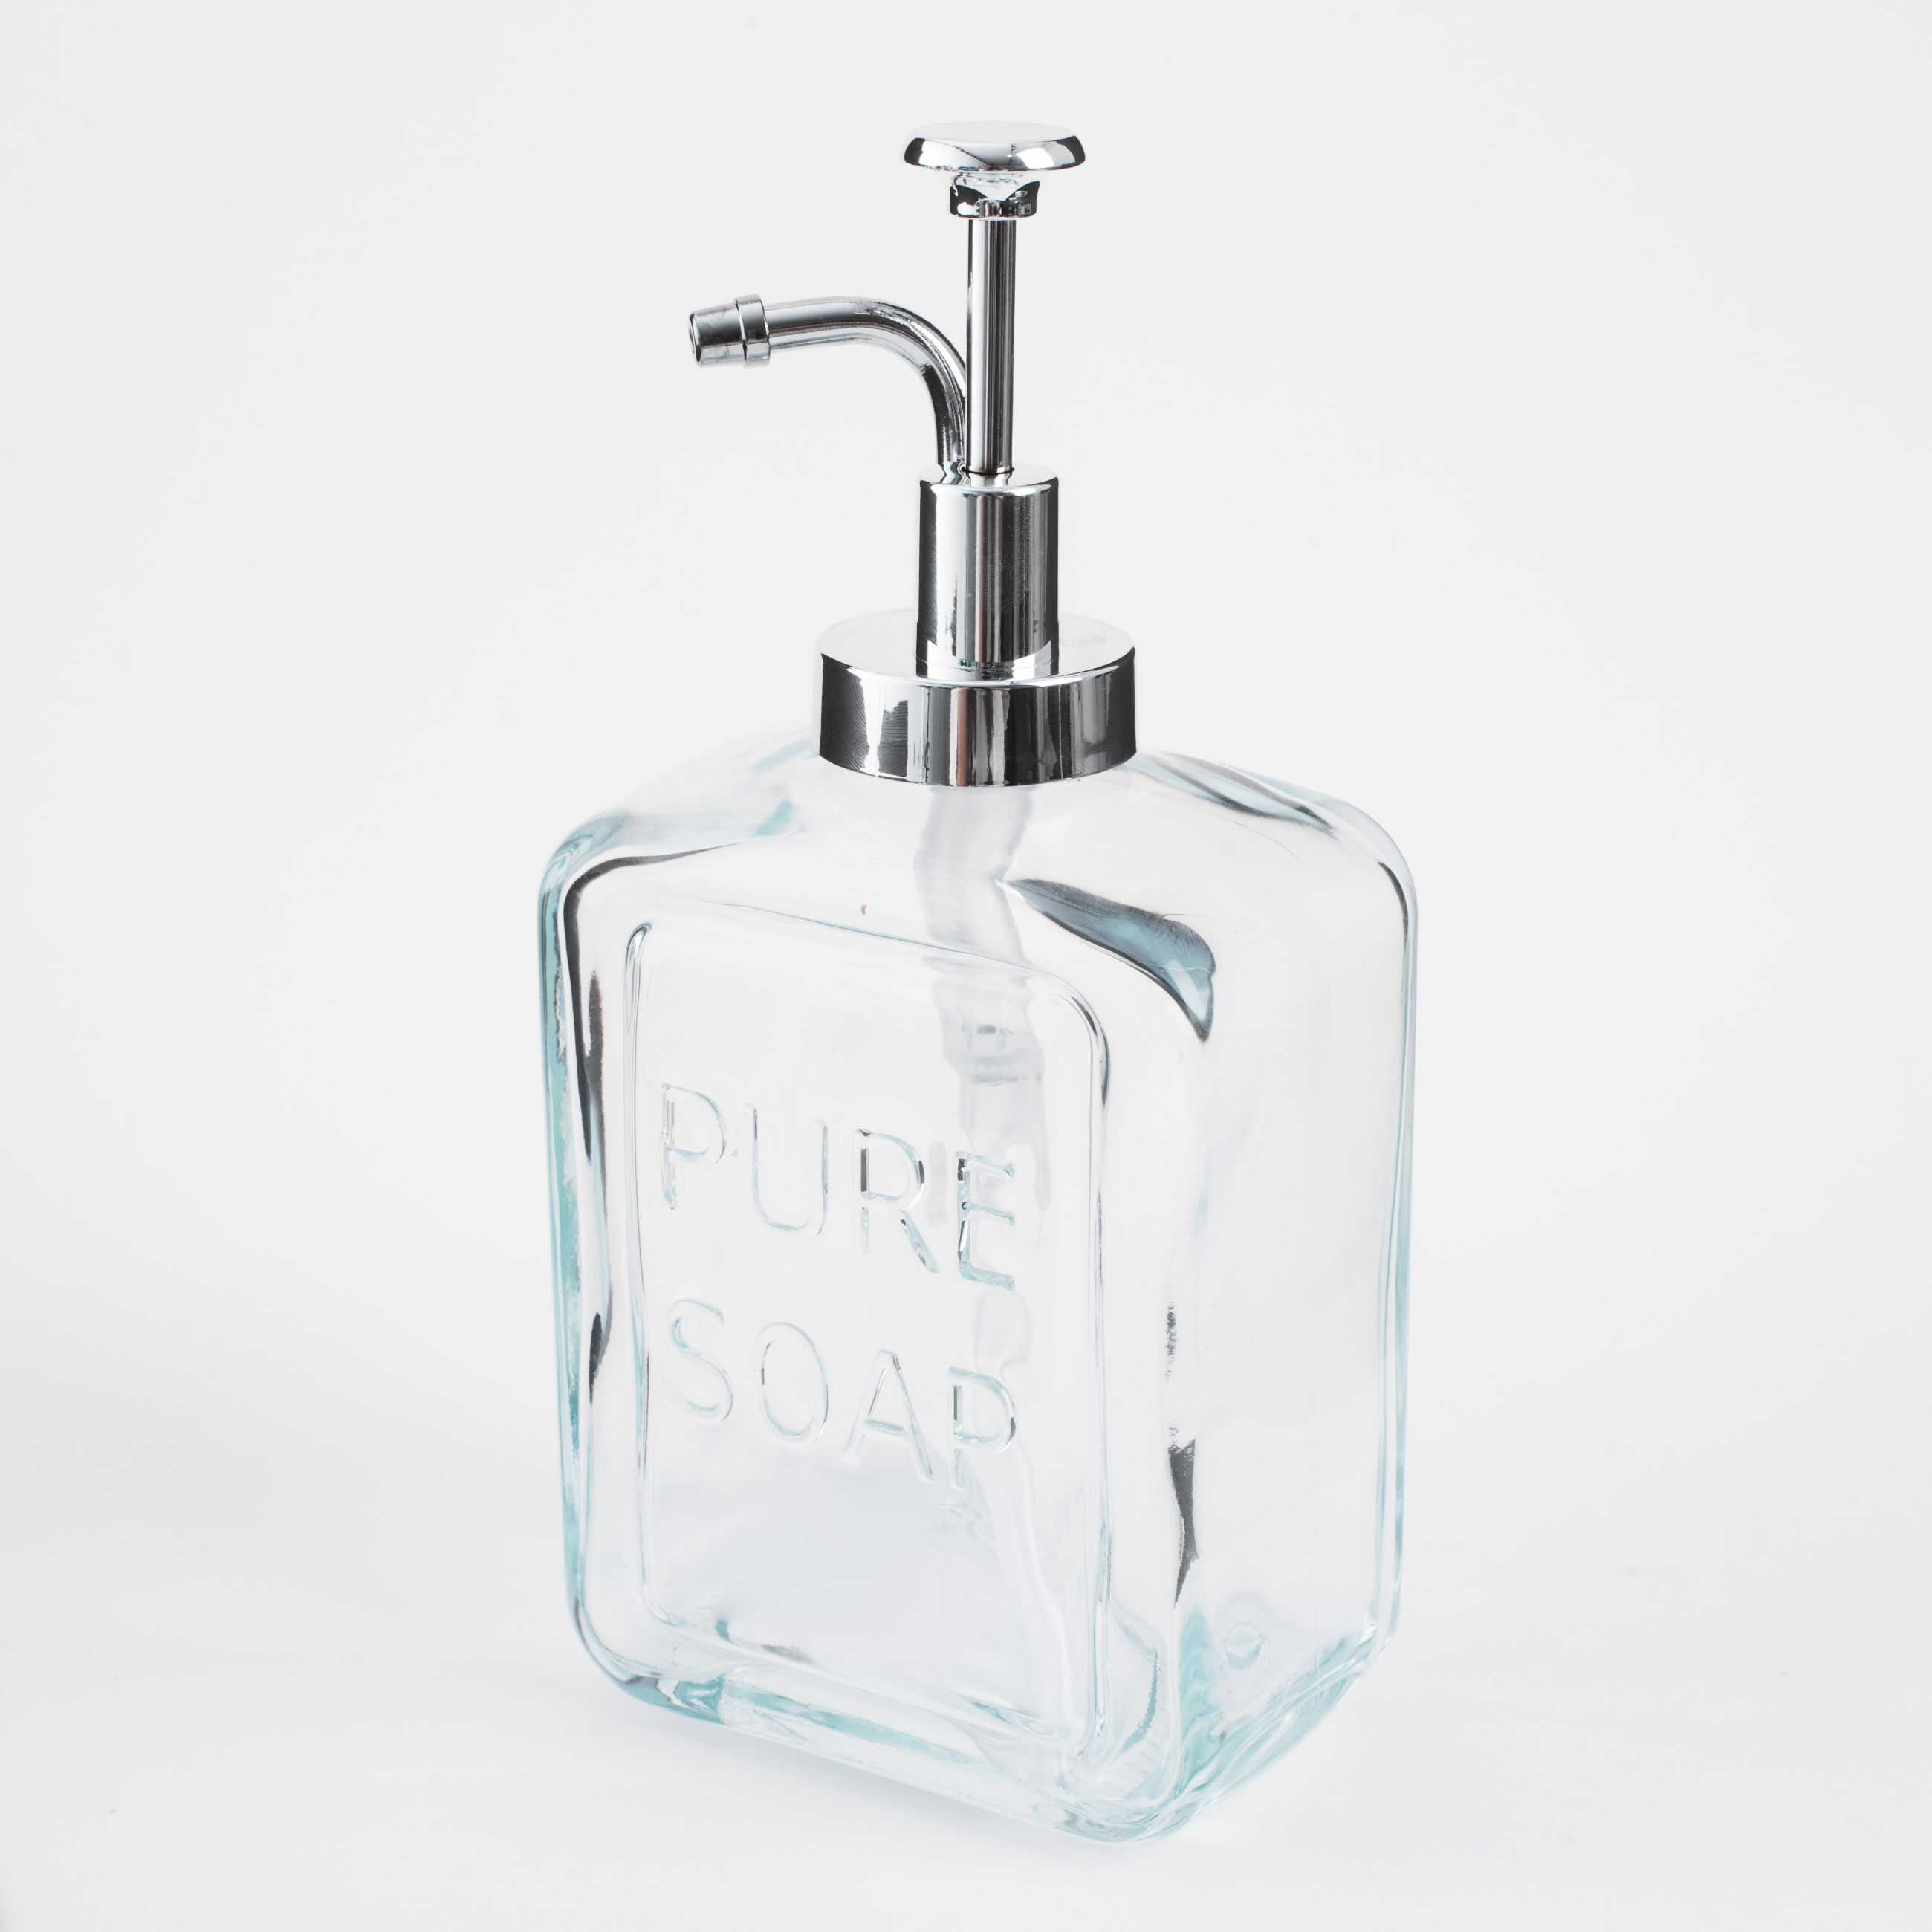 Диспенсер для жидкого мыла, 550 мл, стекло/пластик, серебристый, Pure soap, Clear title изображение № 2